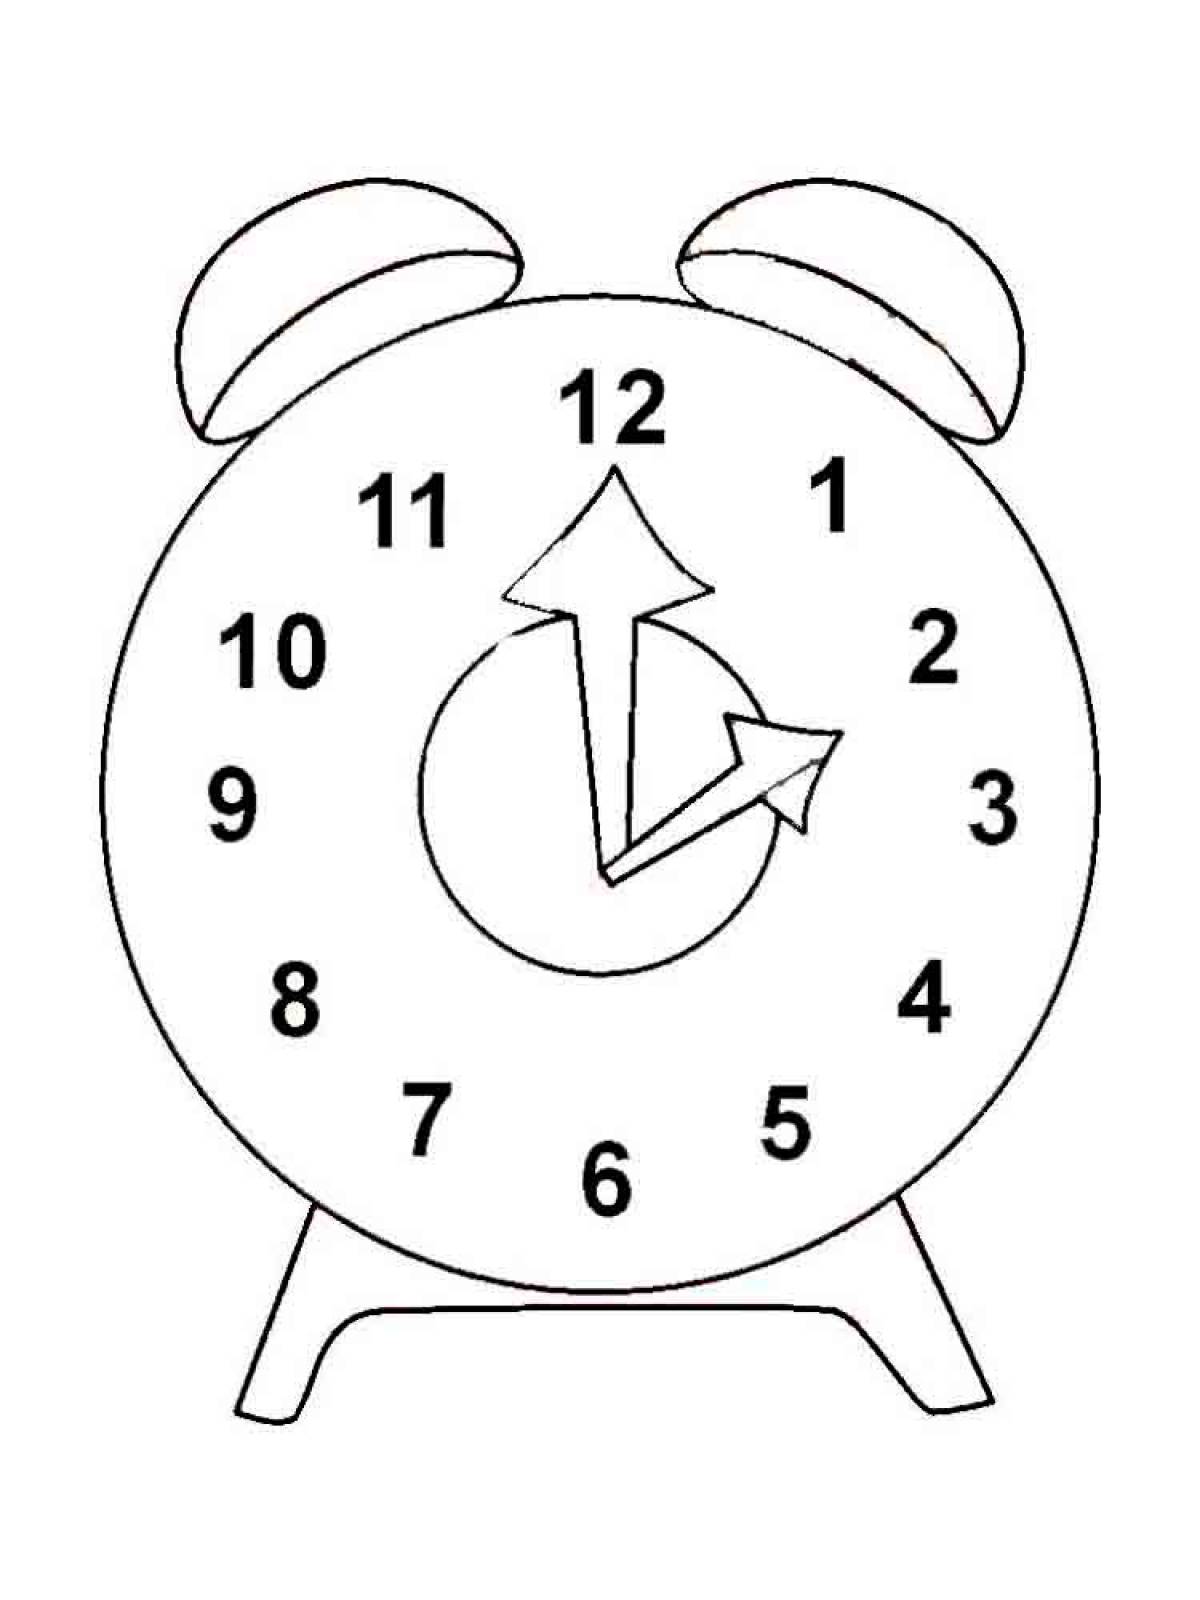 Раскраски часов для детей. Часы раскраска. Часы раскраска для детей. Часы раскраска для малышей. Часы для распечатки для детей.